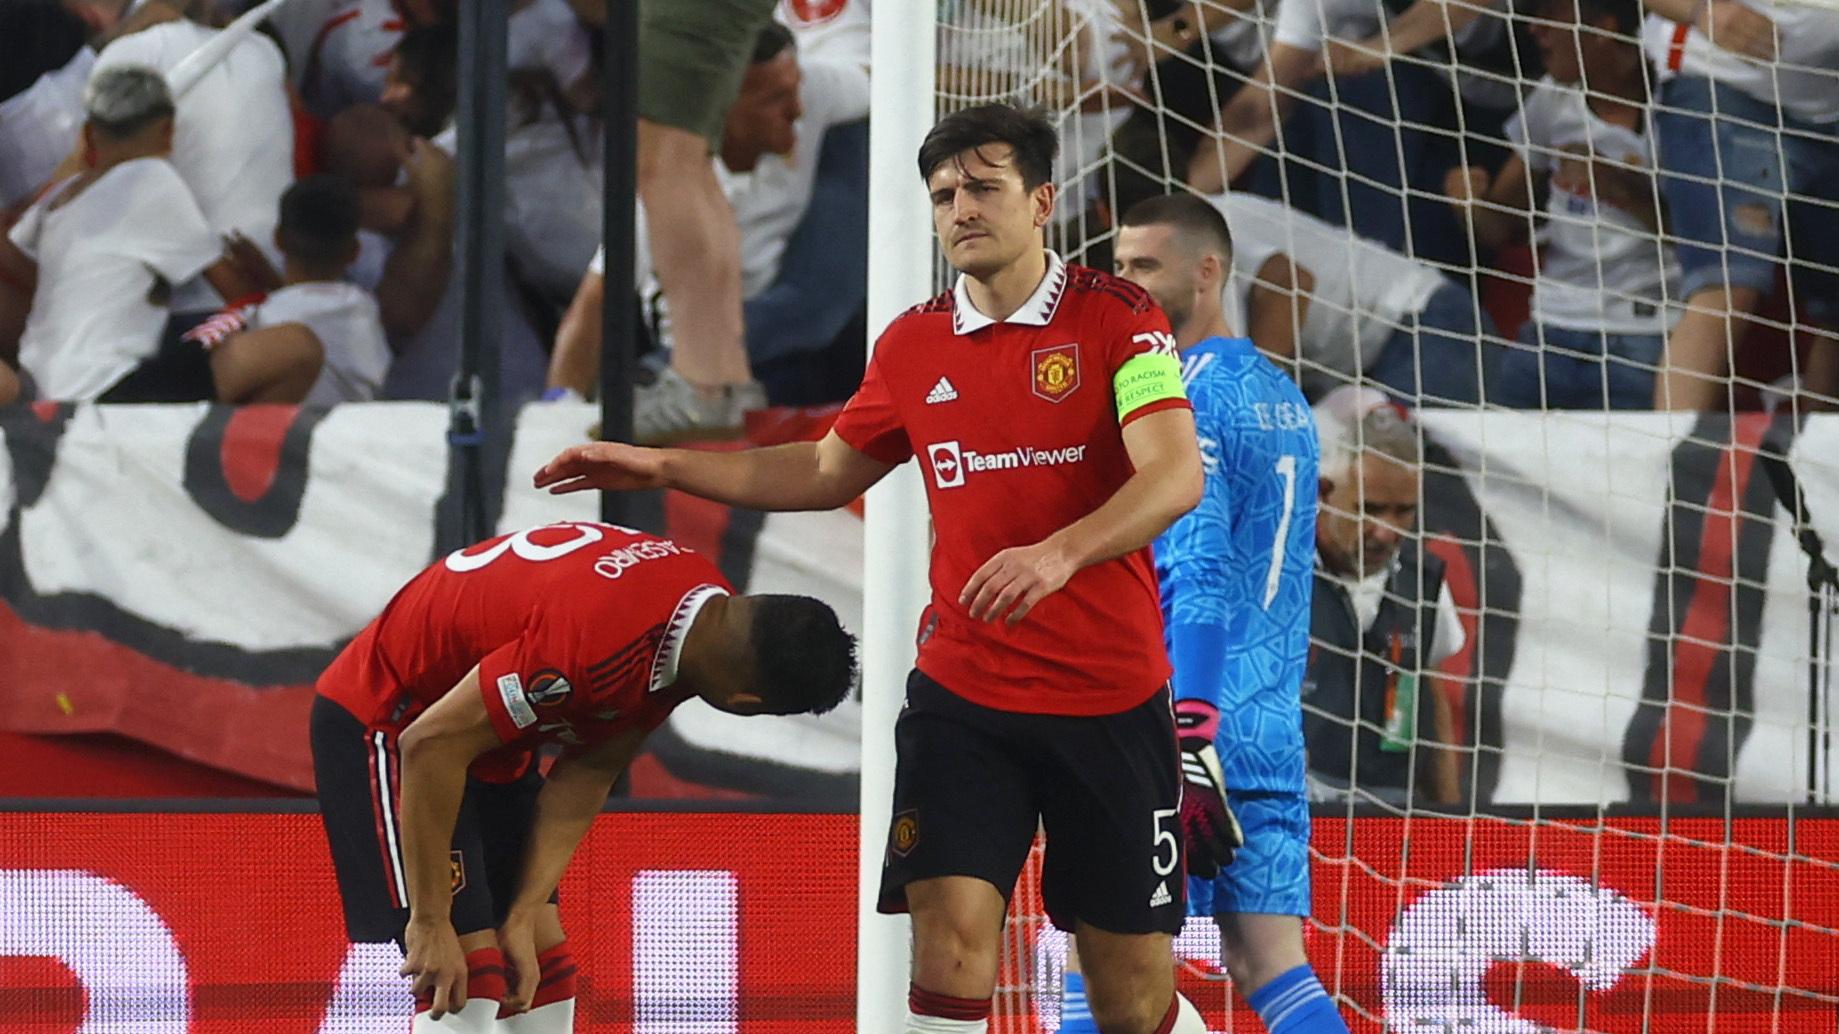 Európska liga - Manchester United podal neprijateľný výkon | Šport.sk